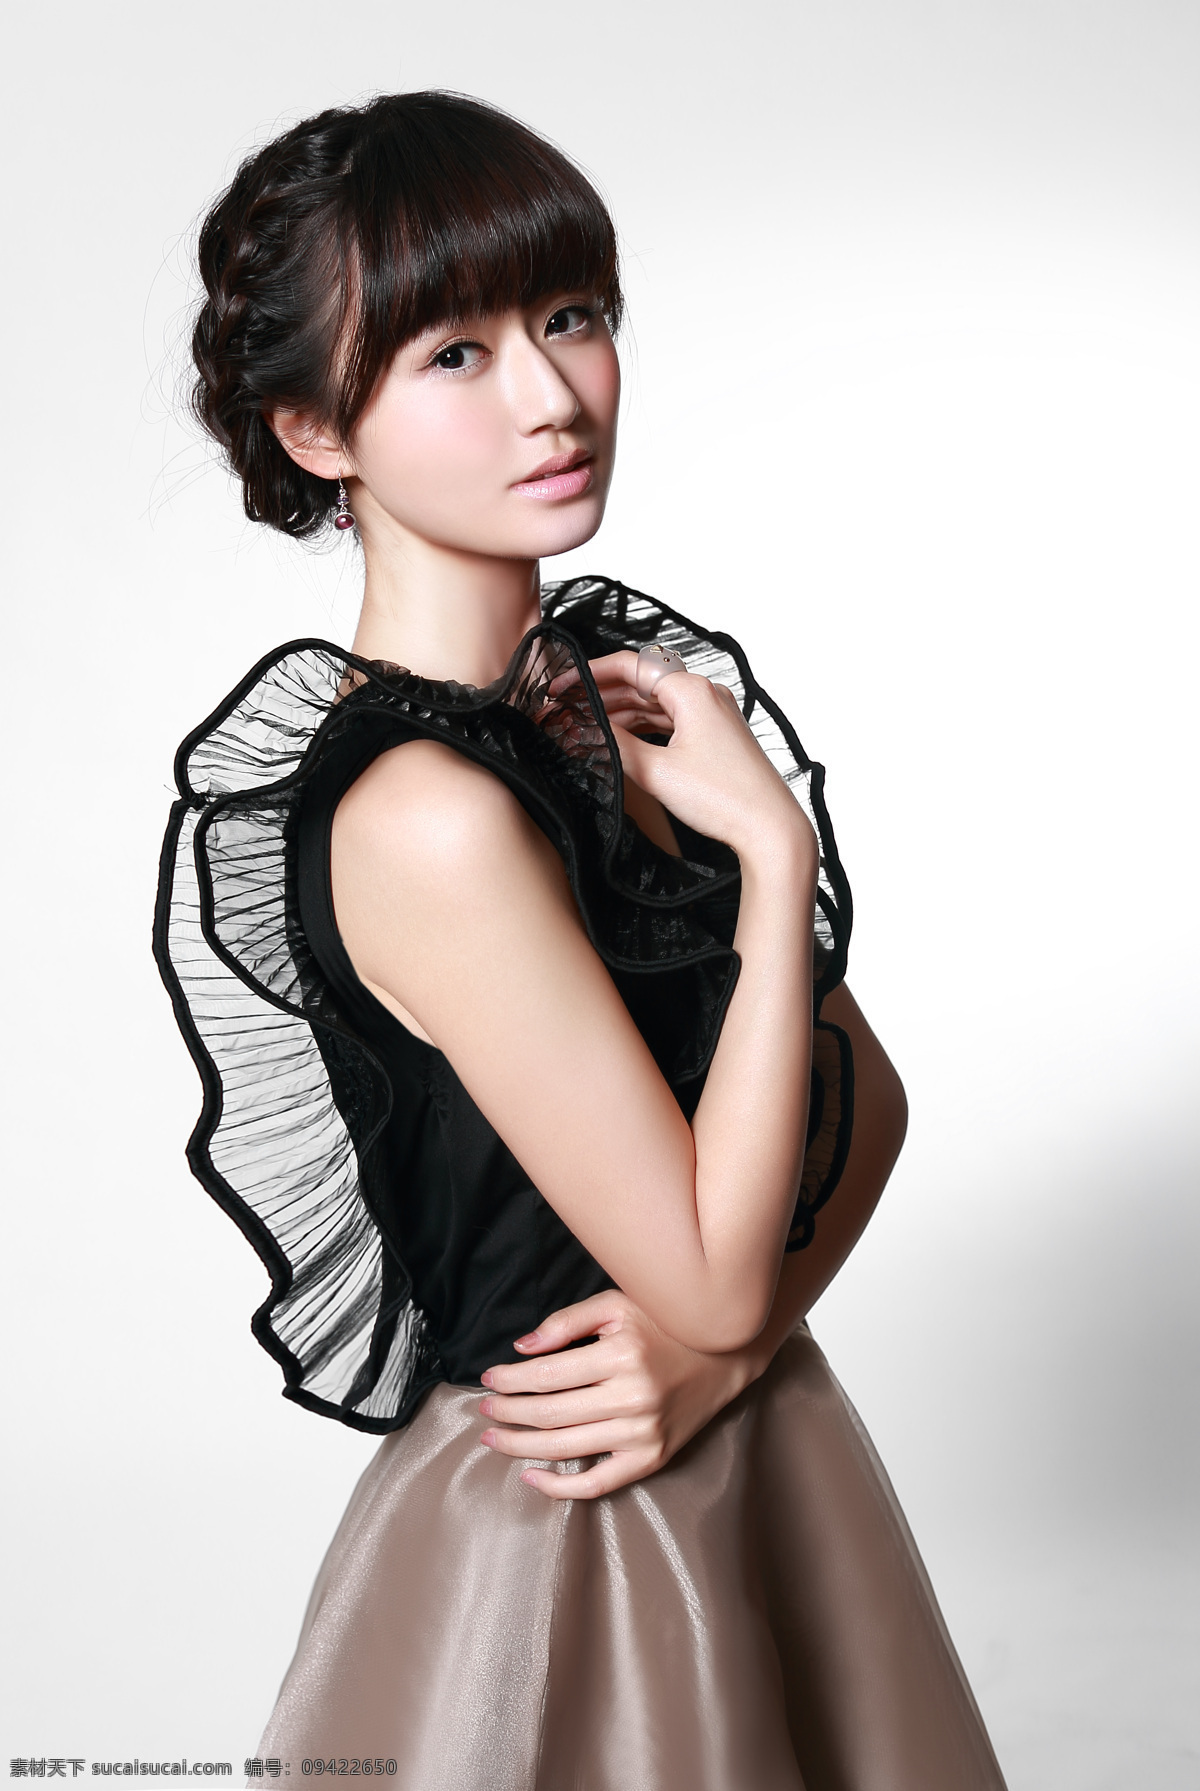 乔紫荷 写真 无袖裙 北京电影学院 2008 级 表演系 明星偶像 人物图库